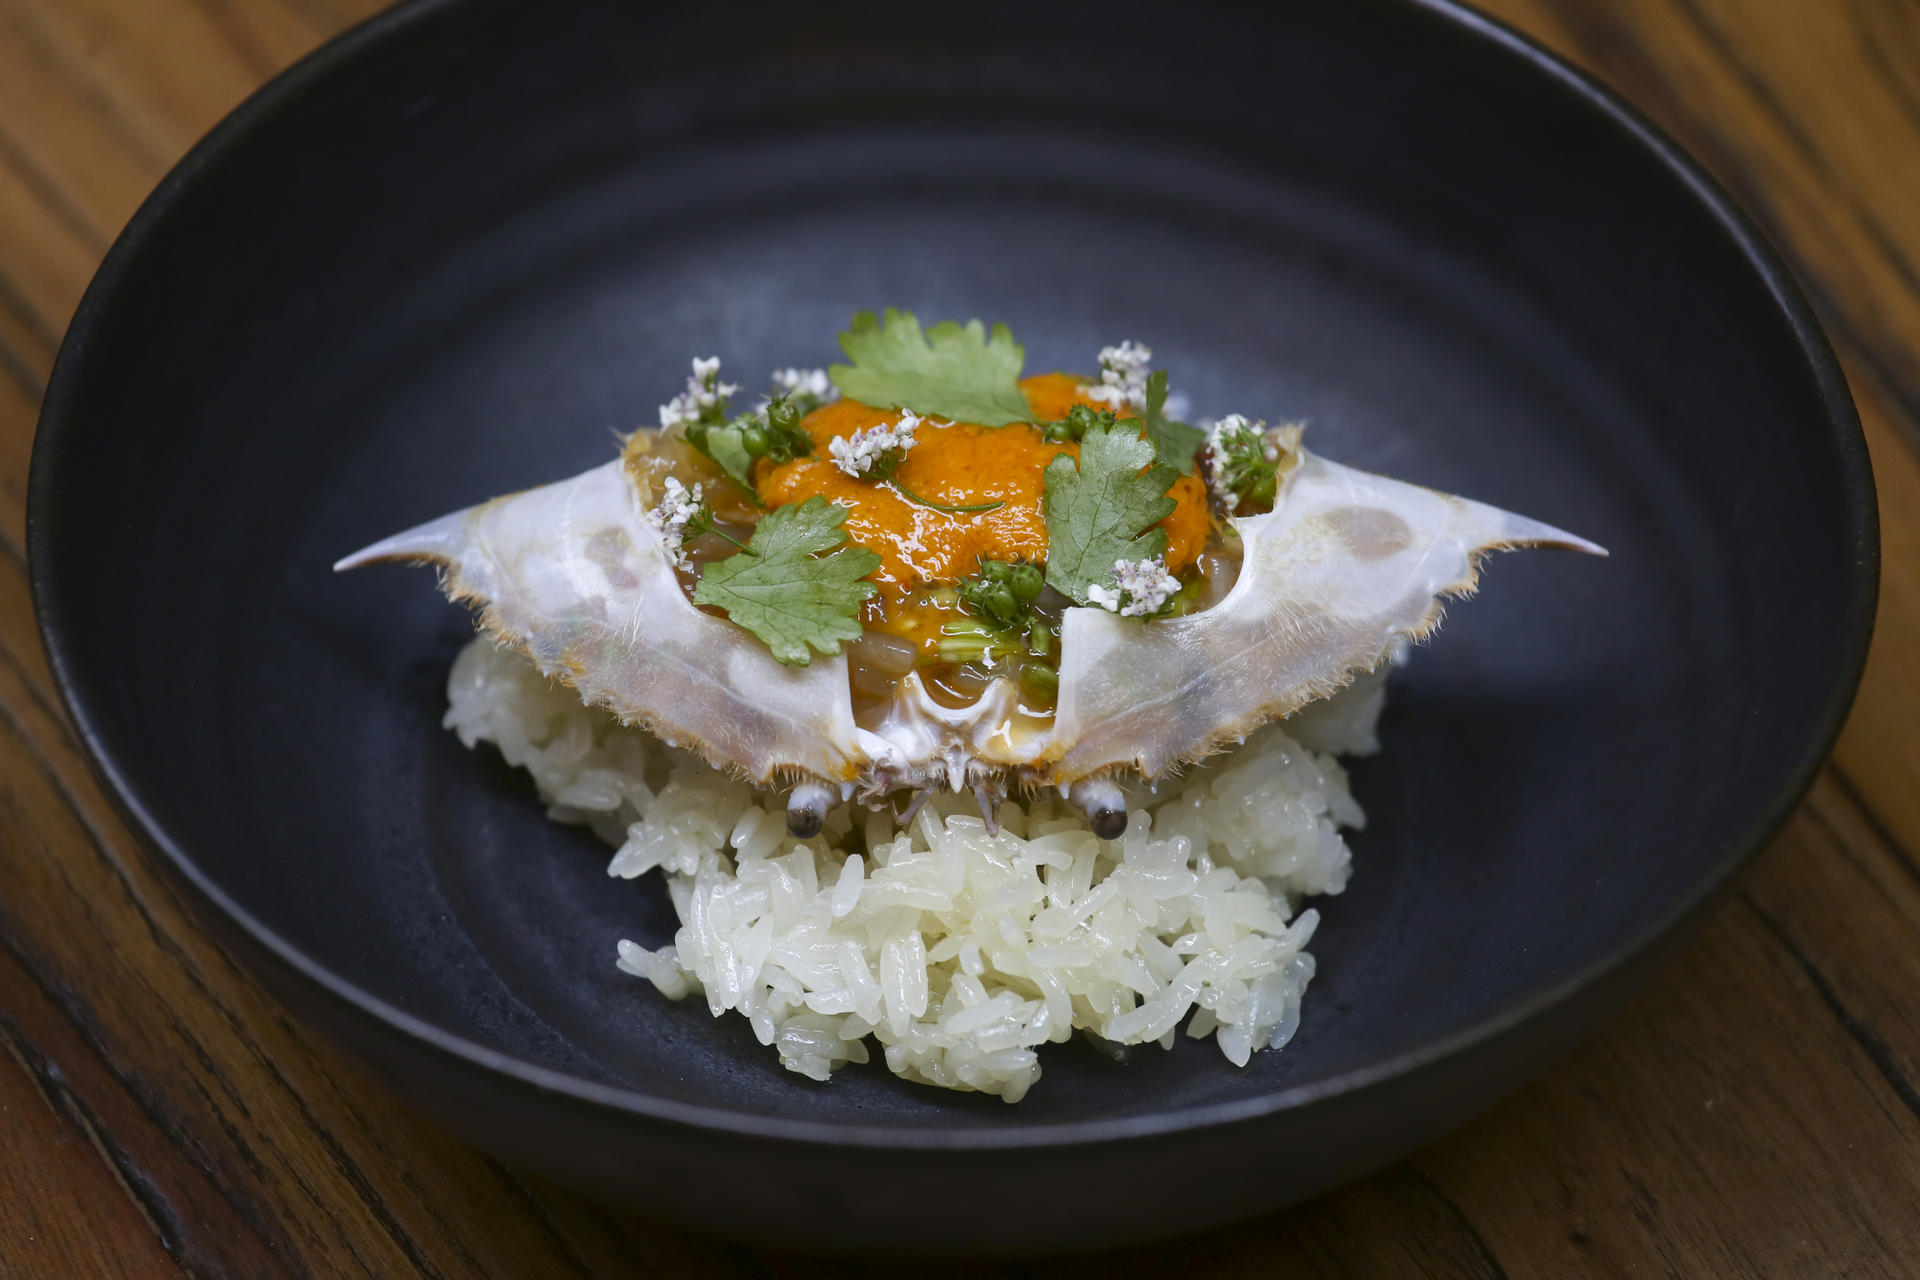 Chiu Chow marinated raw crab, sea urchin at Fish School. Photo: Jonathan Wong